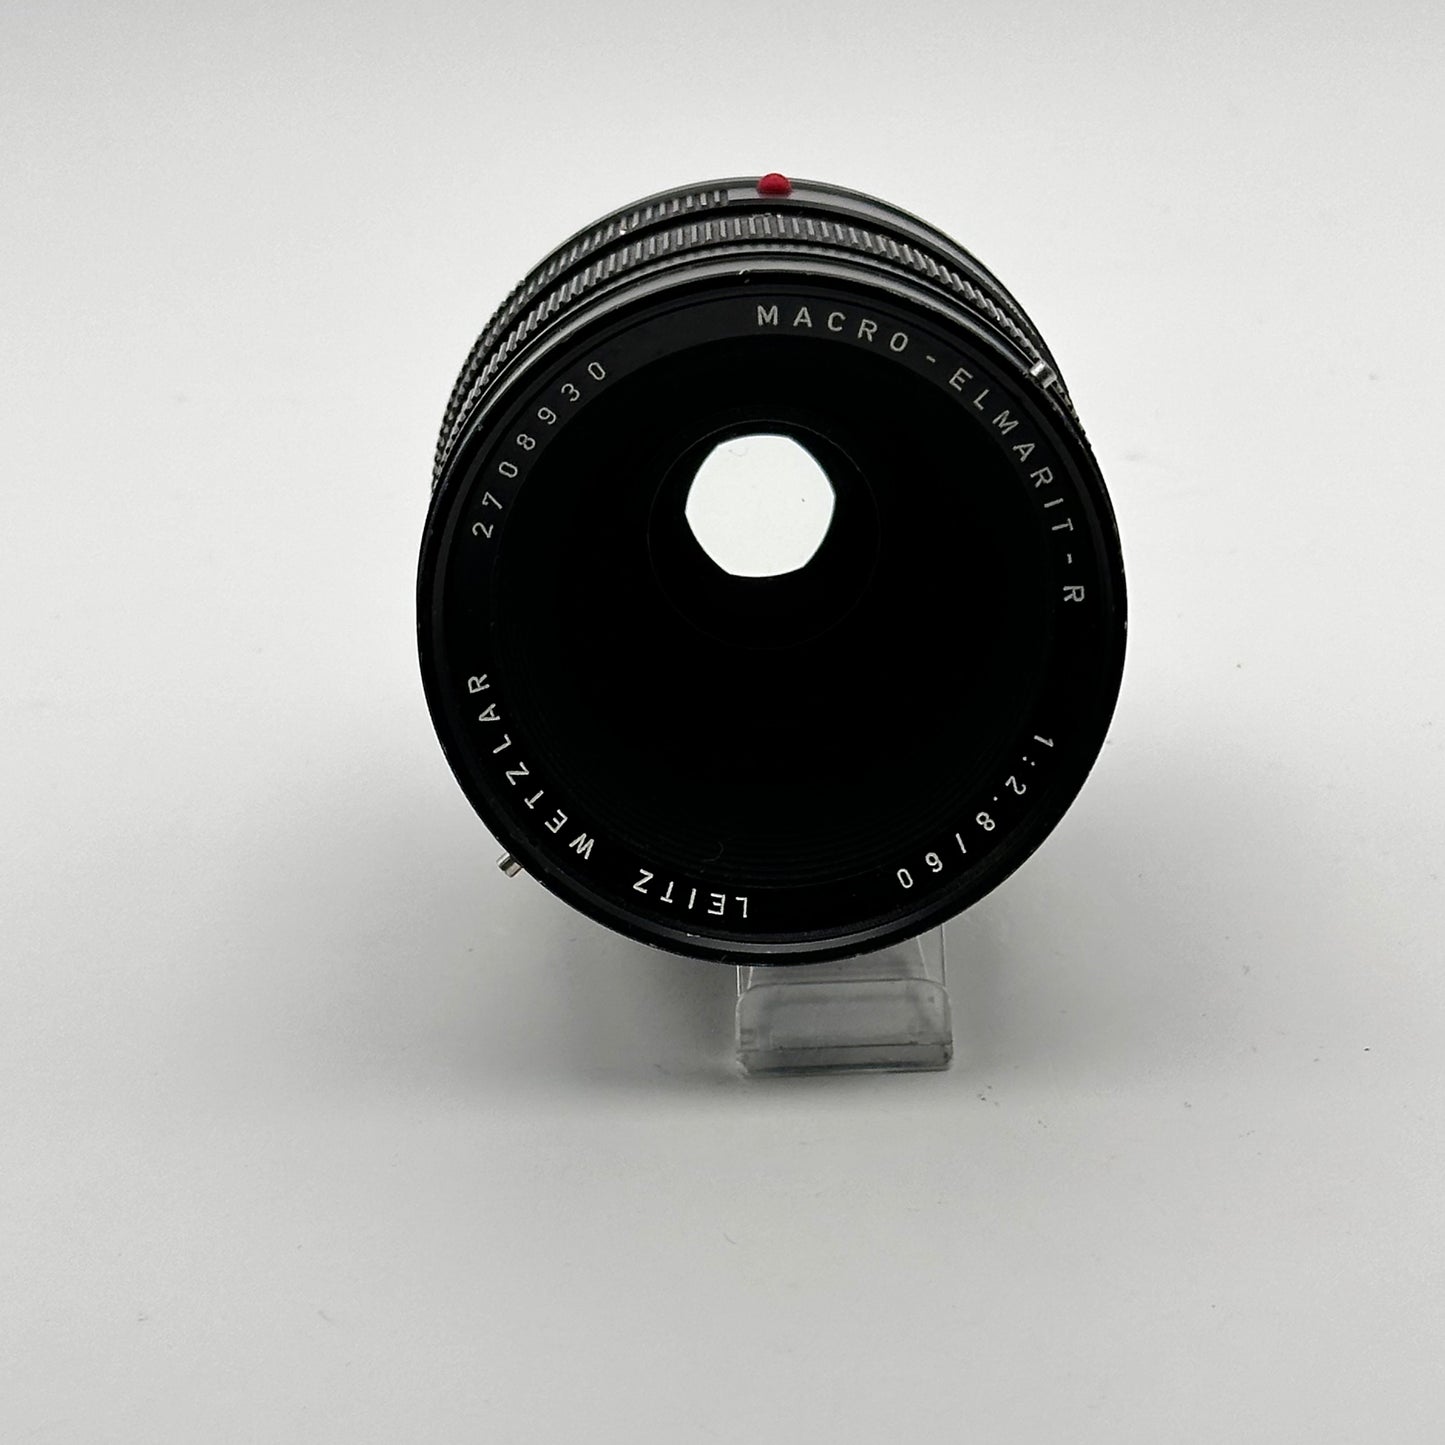 Leica Leitz Leicaflex SL2 Schwarz inkl. Macro-Elmarit R 60mm f/2.8